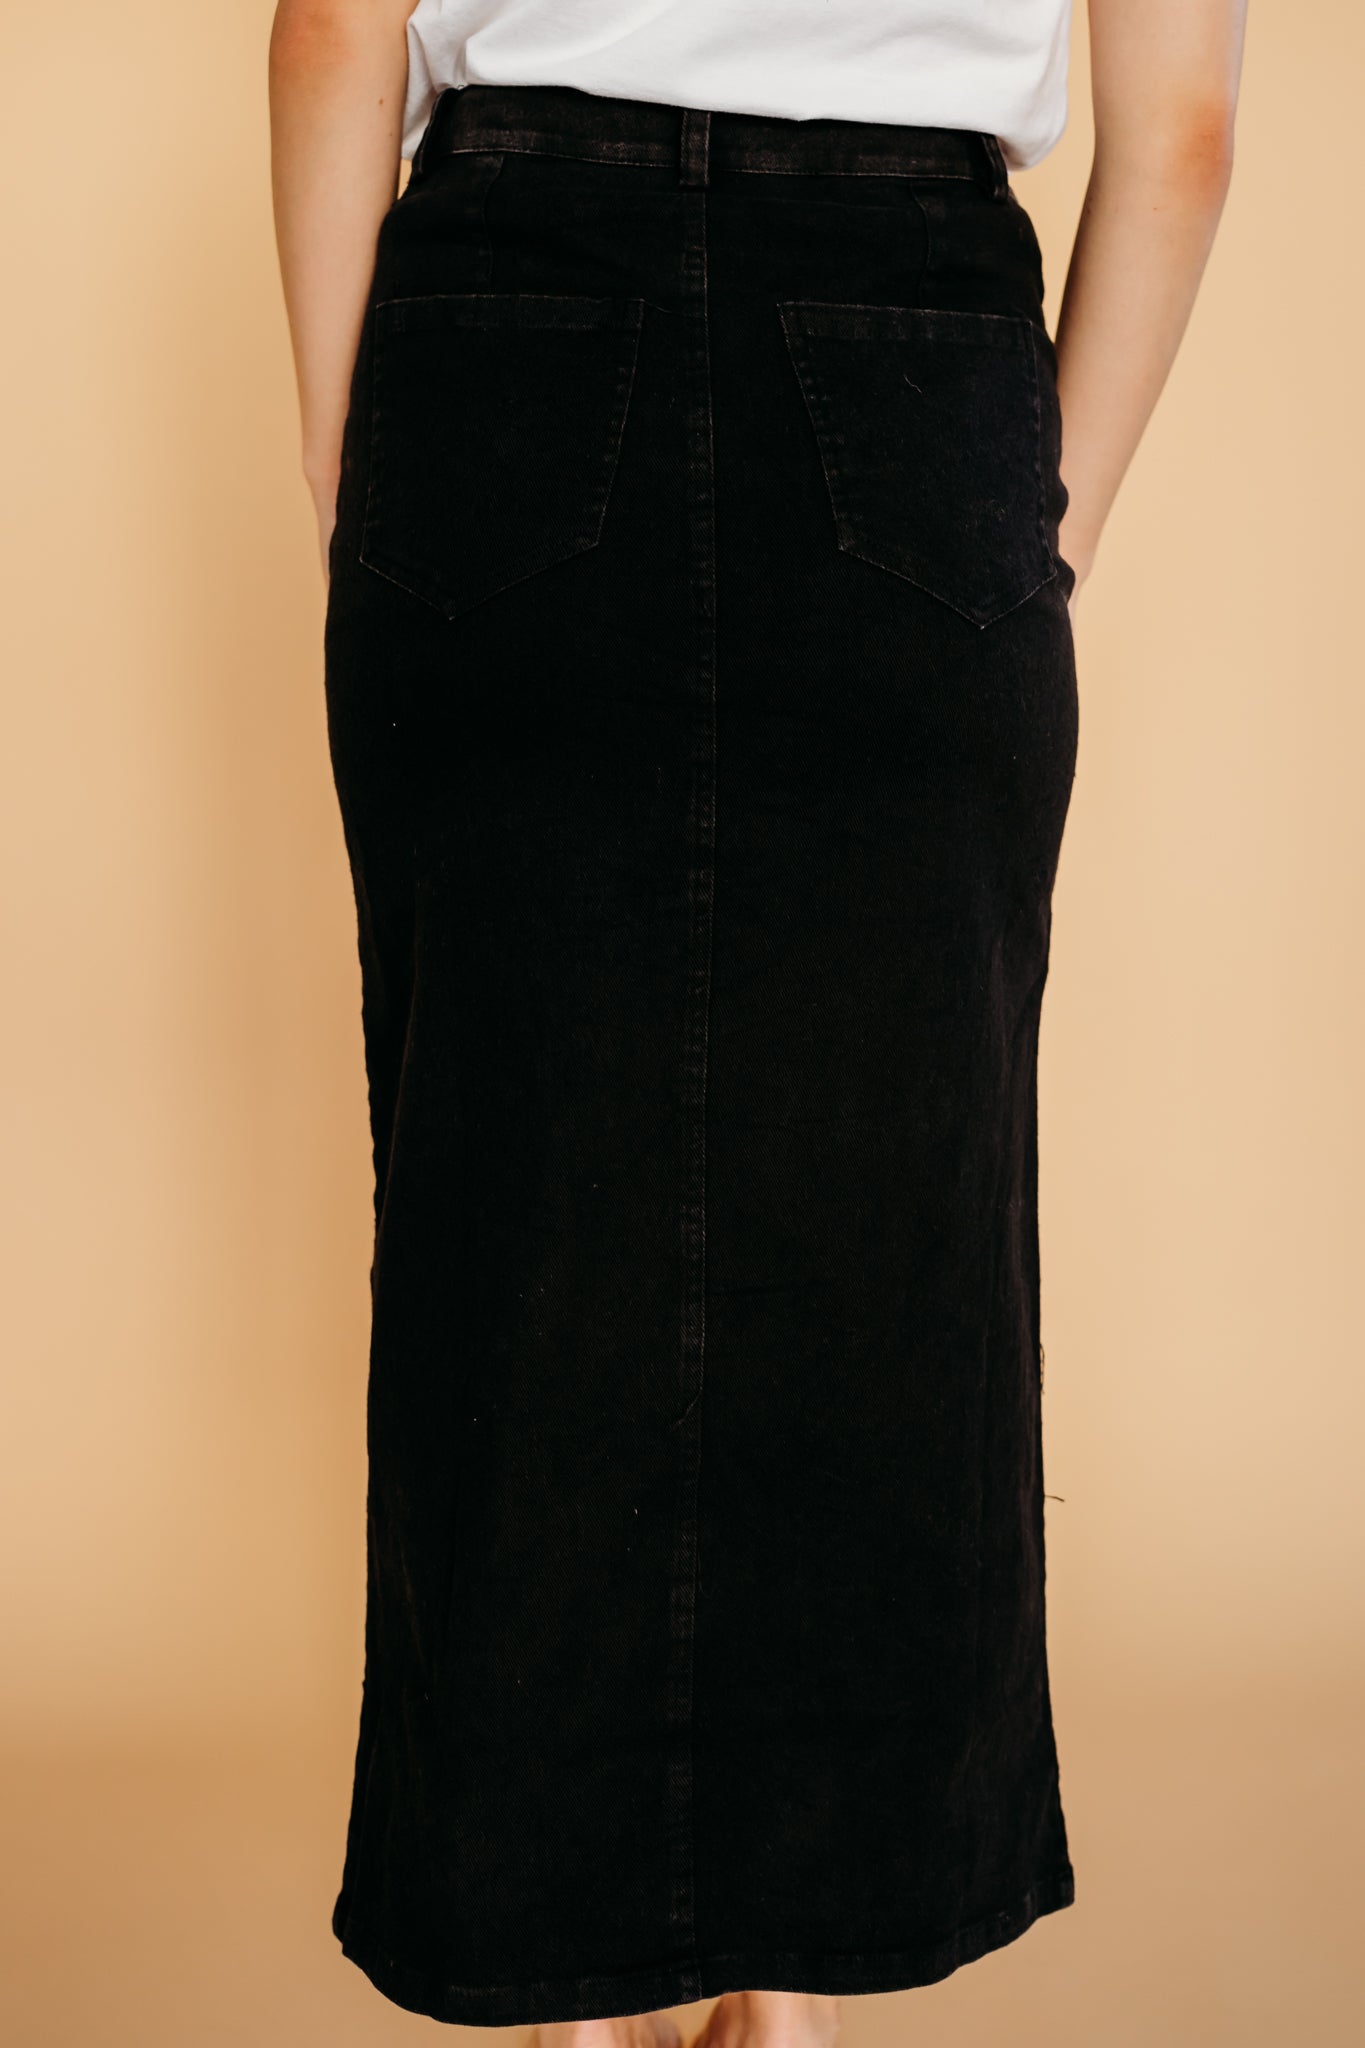 Black denim skirt for fall style | PINK DESERT